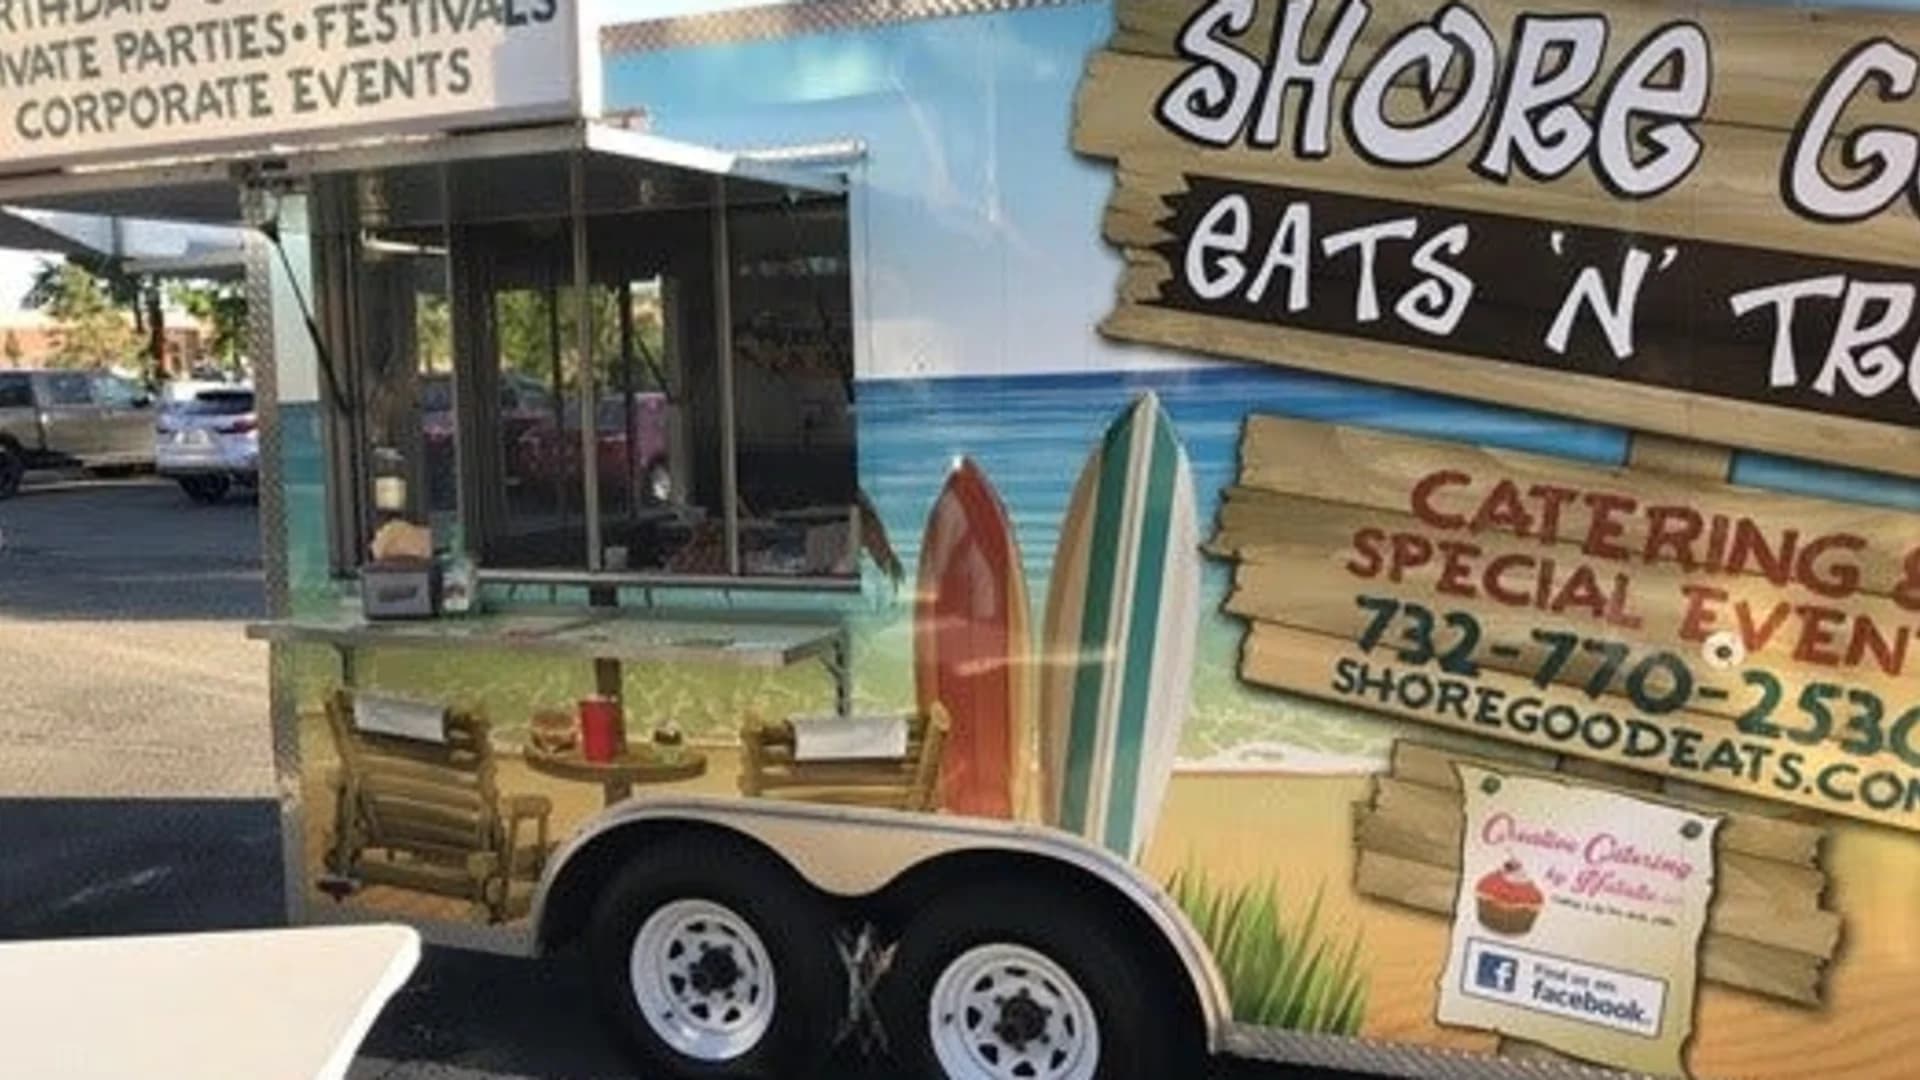 Food Truck Friday: Shore Good Eats ‘N’ Treats